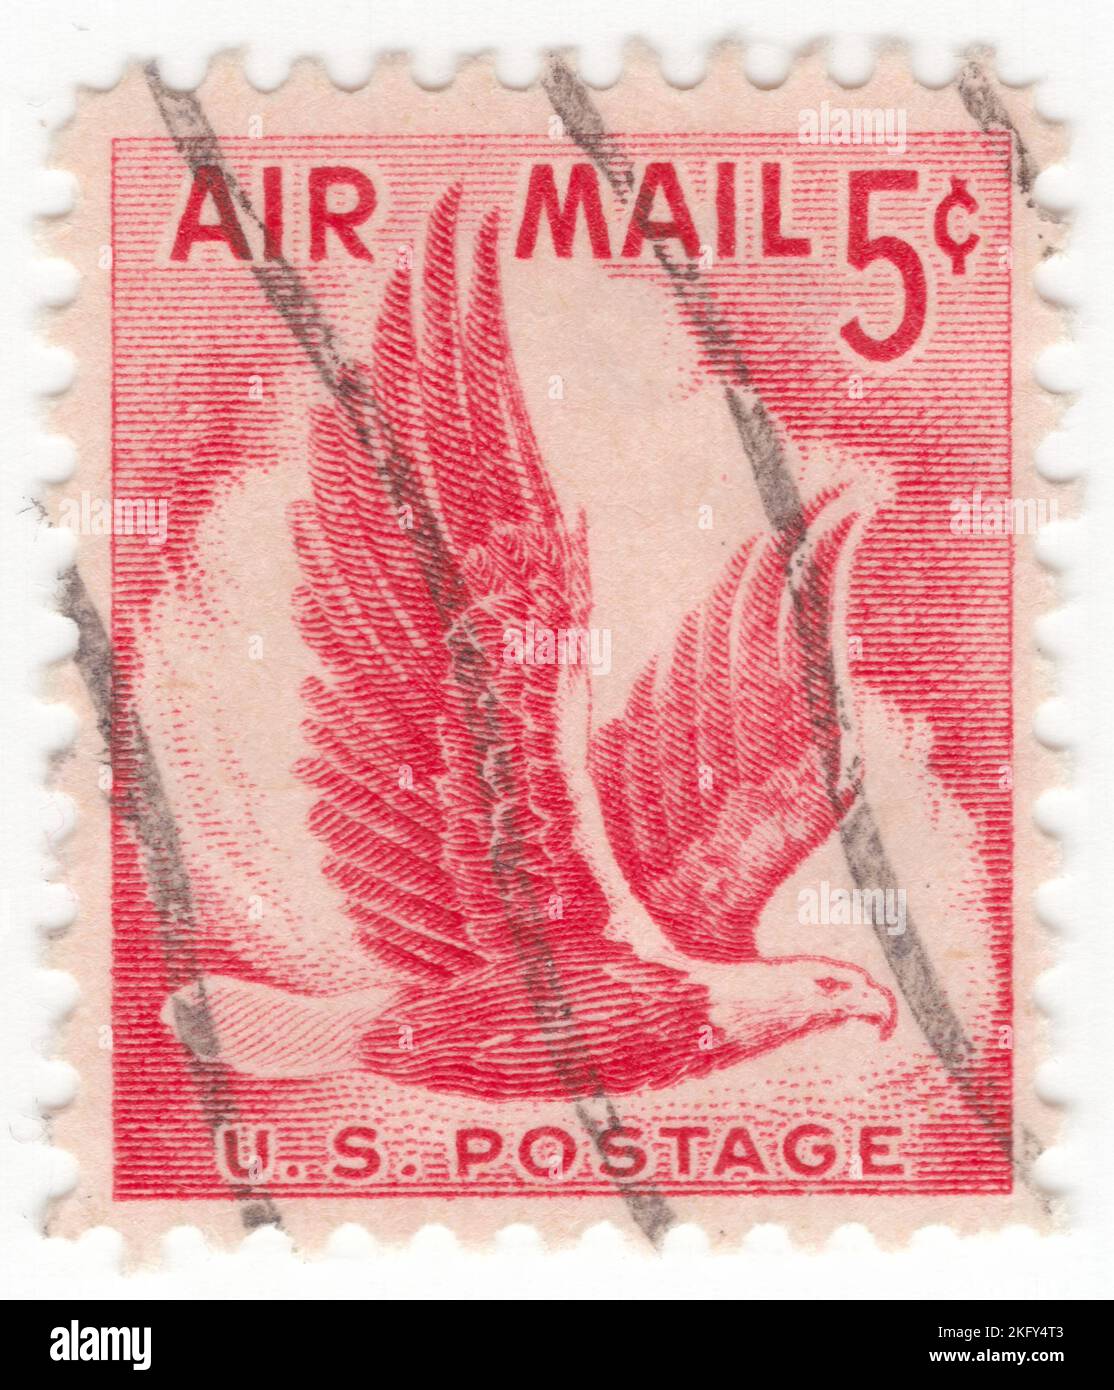 États-Unis - 1958 31 juillet : timbre de poste aérien rouge de 5 cents représentant Eagle en vol. Pour le paiement anticipé de l'affranchissement sur toutes les cartes postales domestiques envoyées par avion Banque D'Images